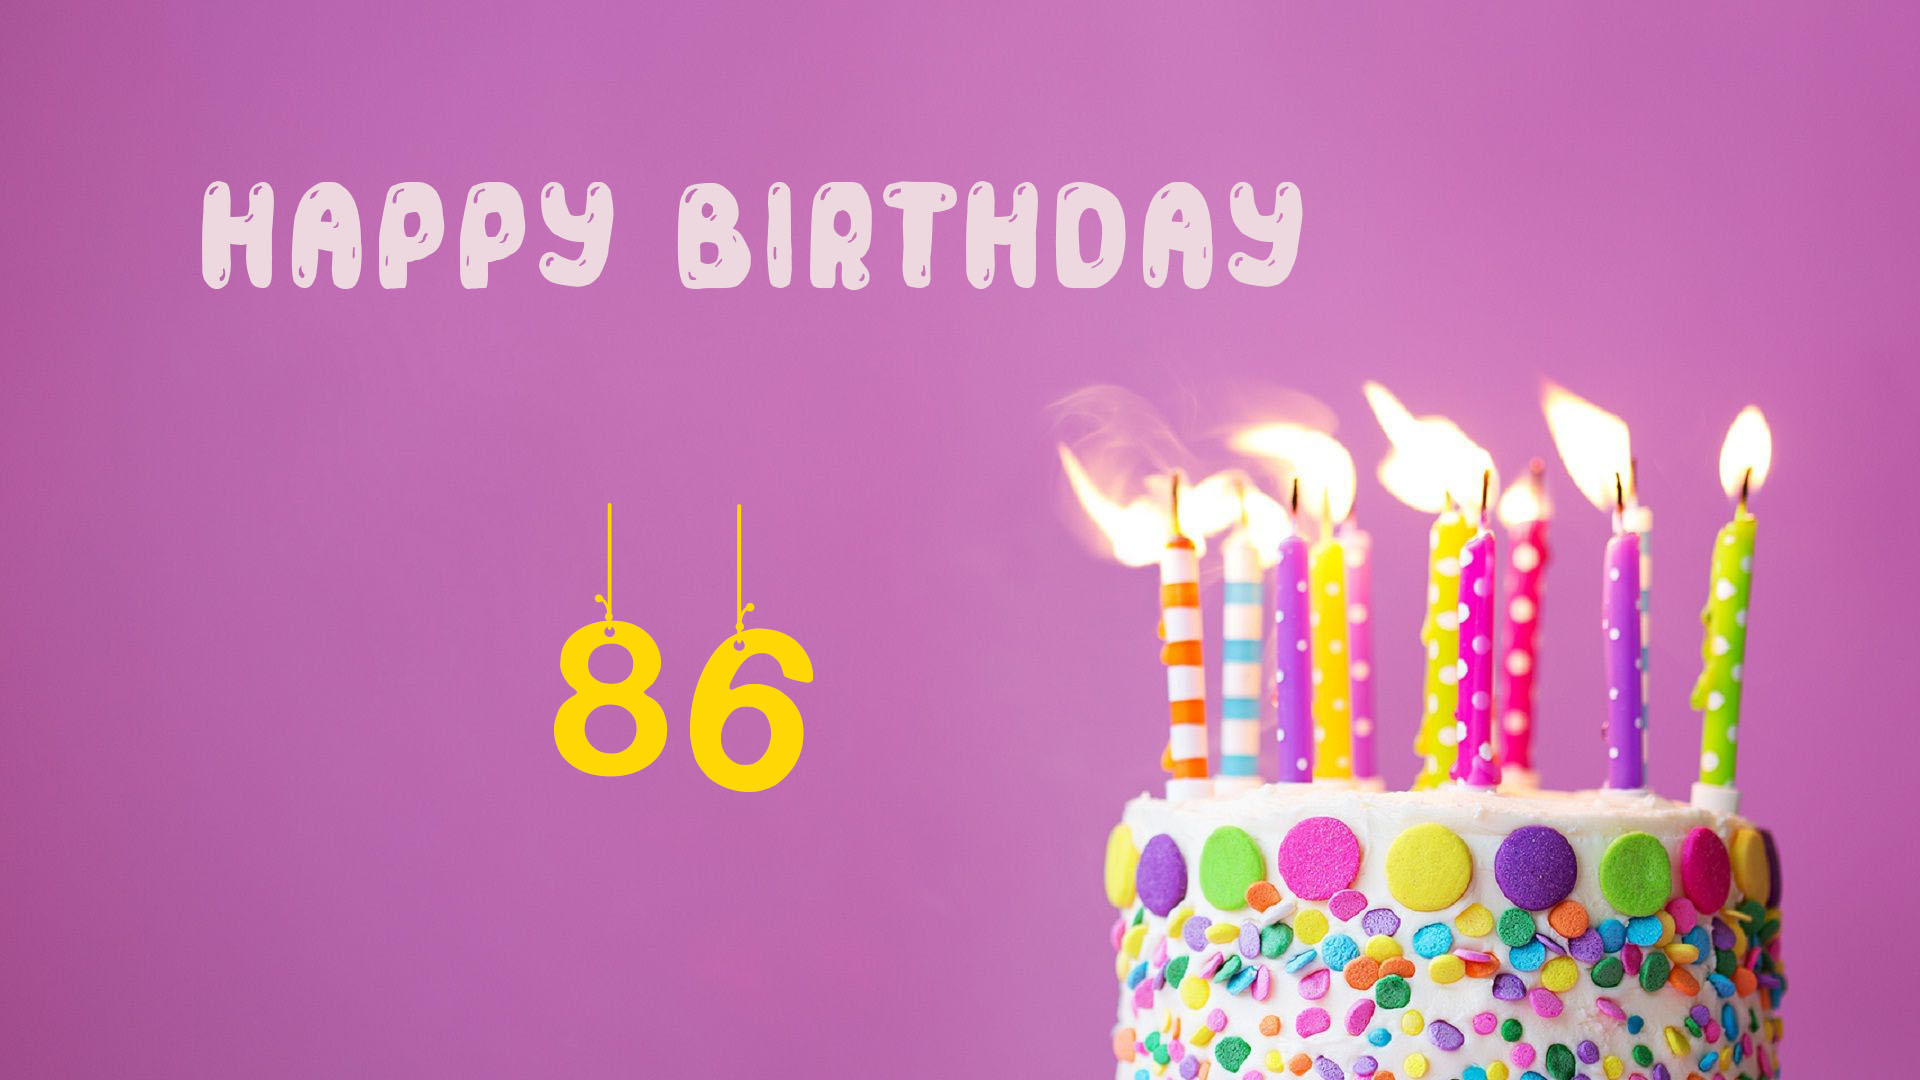 Happy 86 Birthday - Happy 86 Birthday